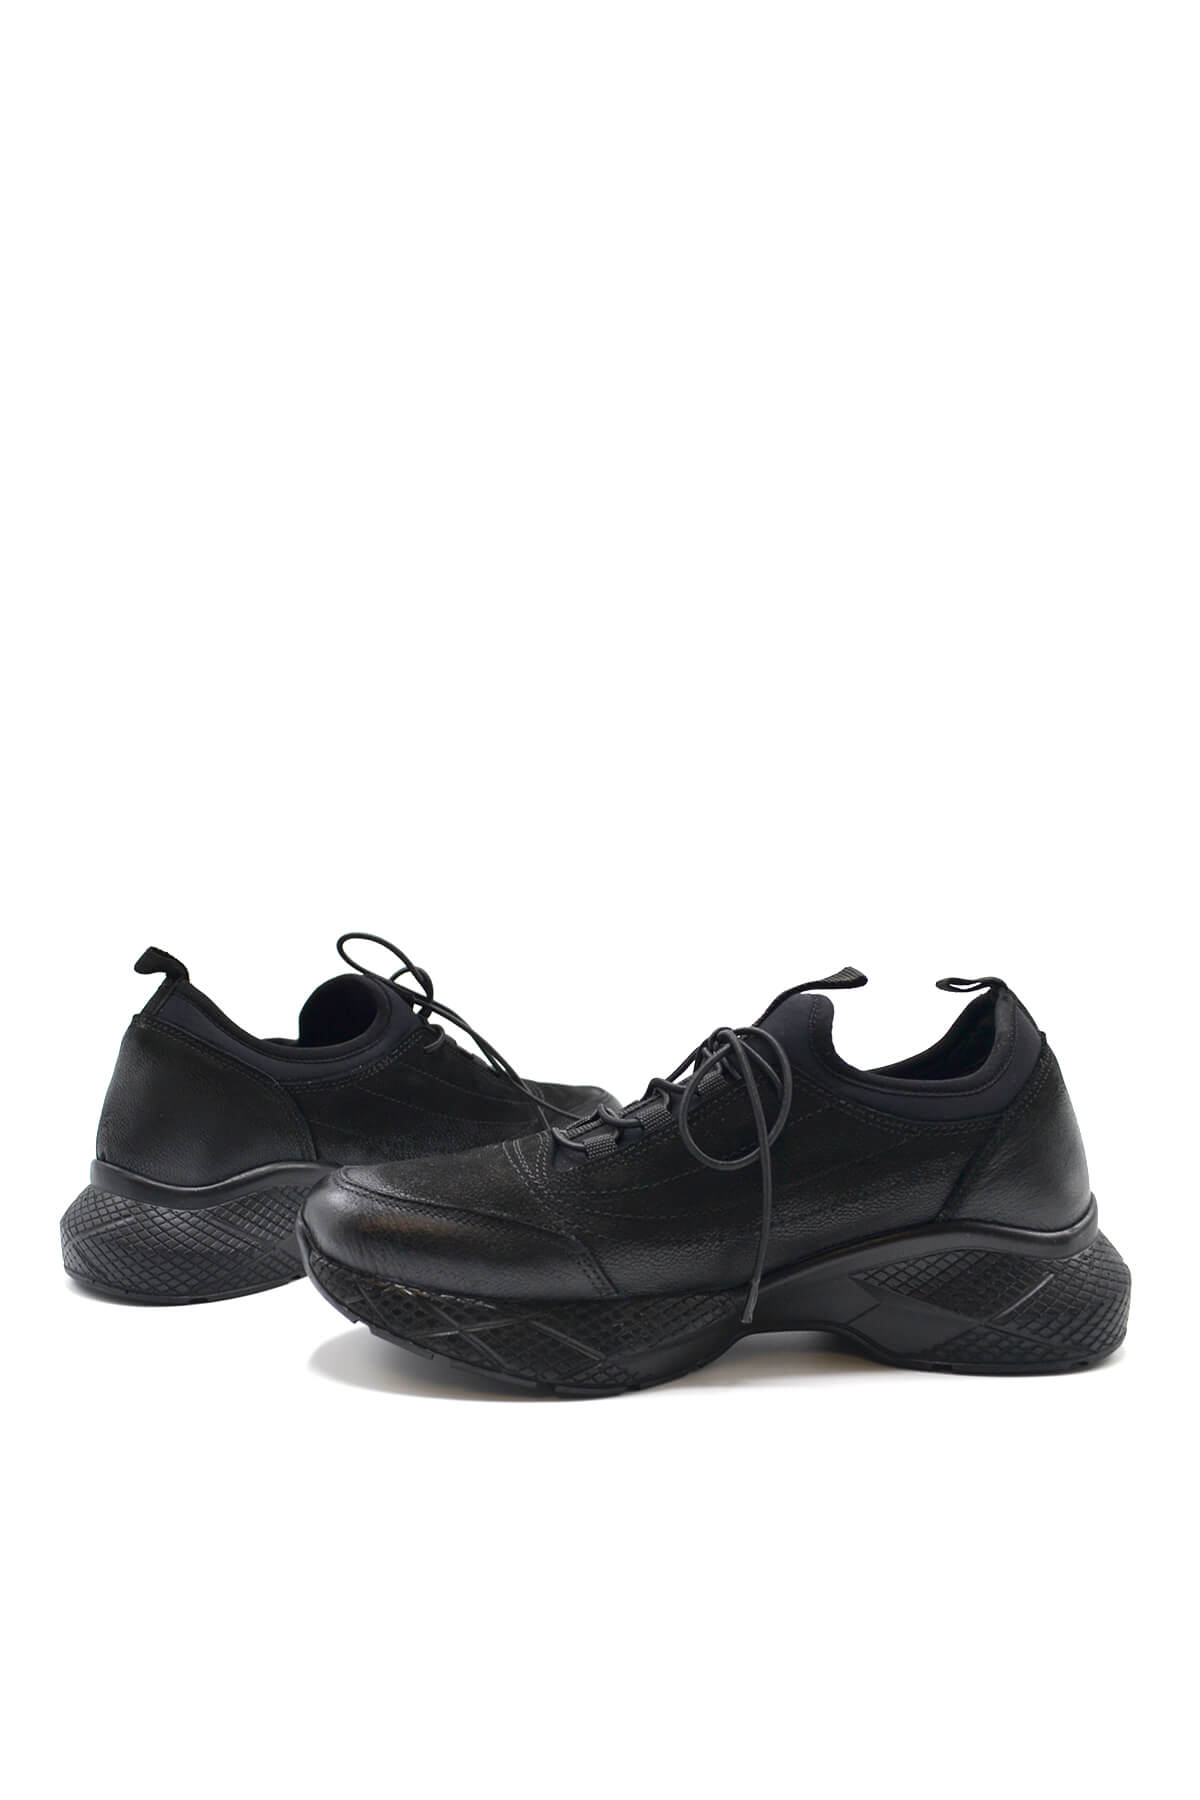 Kadın Comfort Deri Sneakers Airflow Ayakkabı Siyah 2216603K